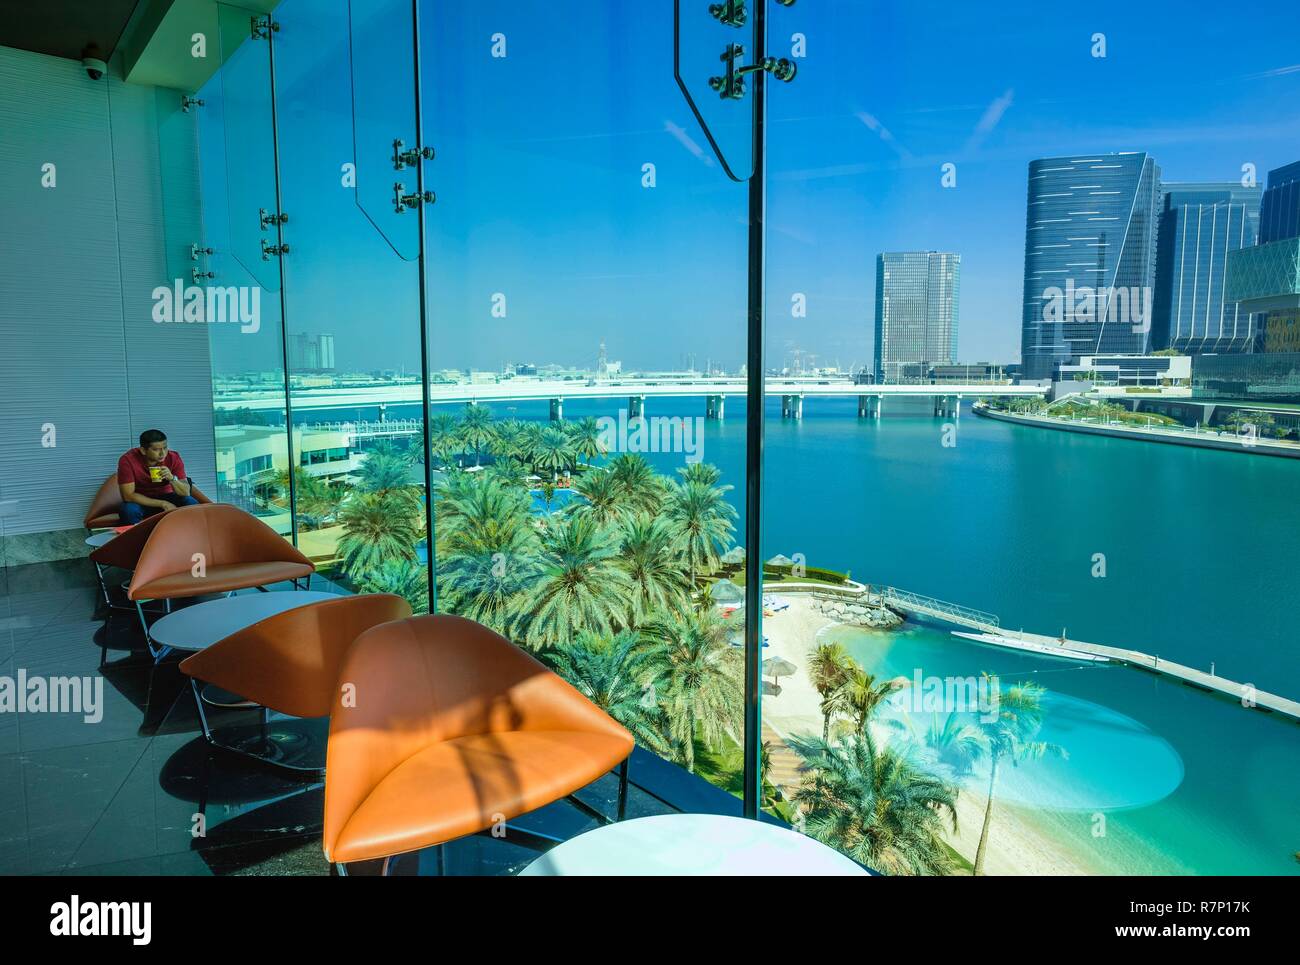 Die Vereinigten Arabischen Emirate, Abu Dhabi, Al Zahiyah Bezirk, Panorama von der Abu Dhabi Mall, Strand von Luxury Beach Rotana Hotel und Al Maryah Insel im Hintergrund Stockfoto